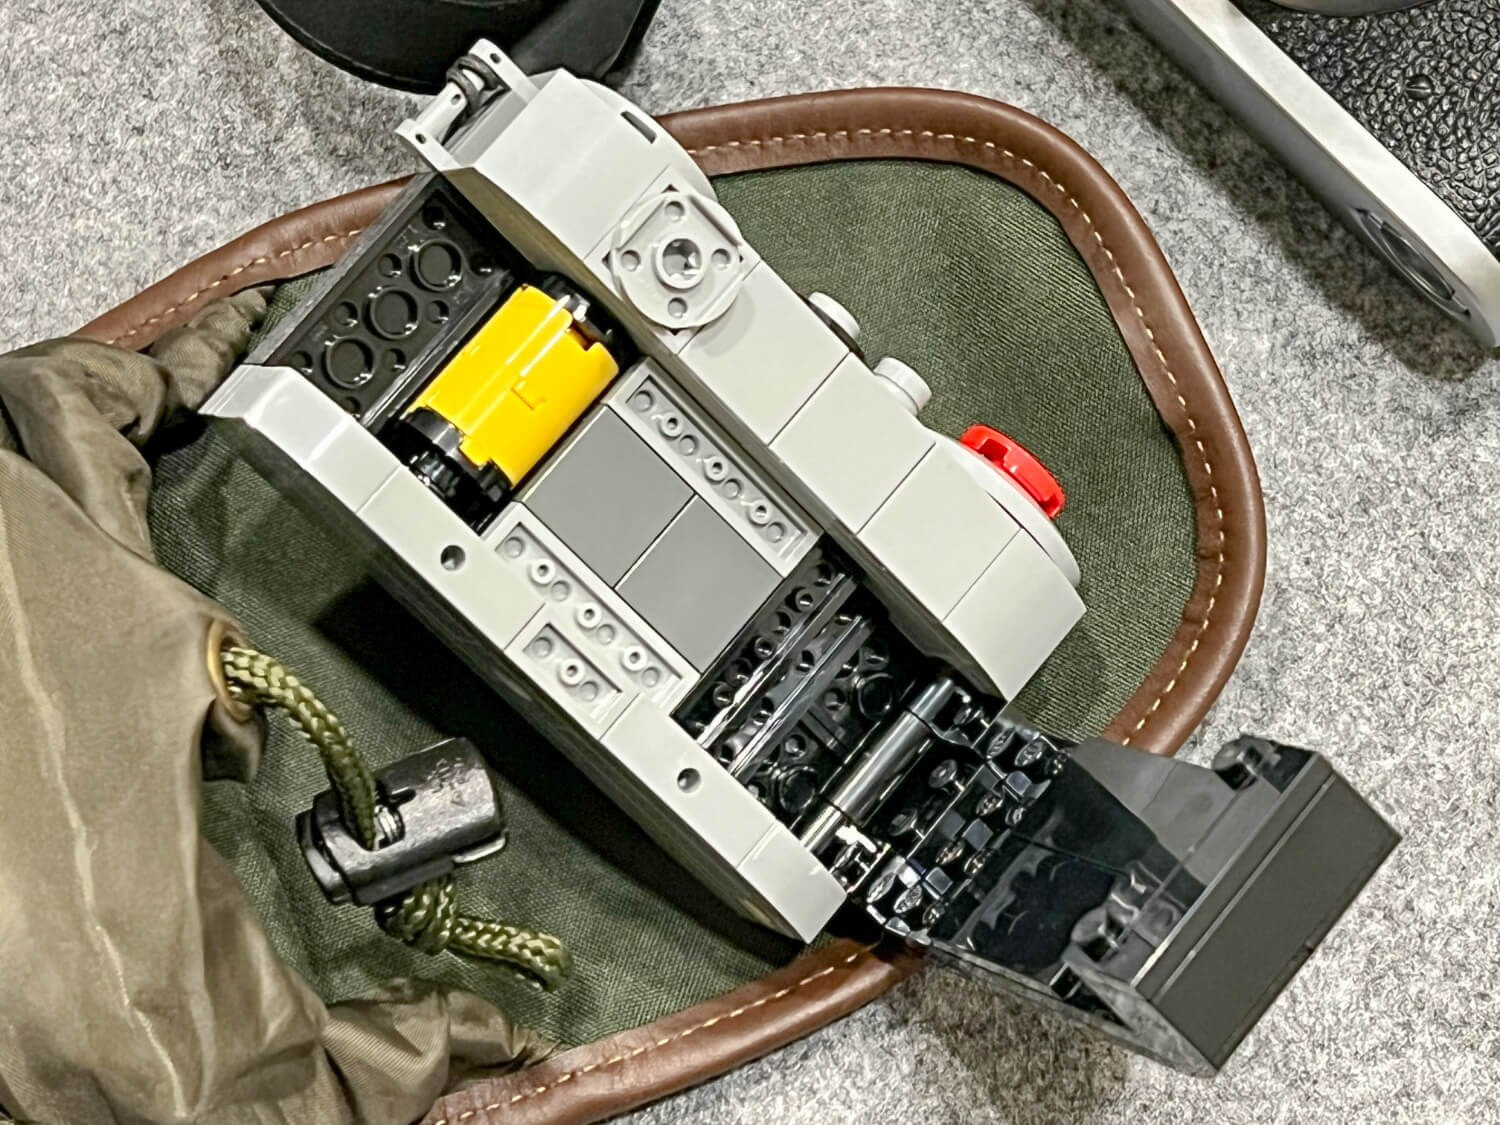 Lego 6392344 VIP Rangefinder Camera and Billingham AVEA 7 end pocket - Rear